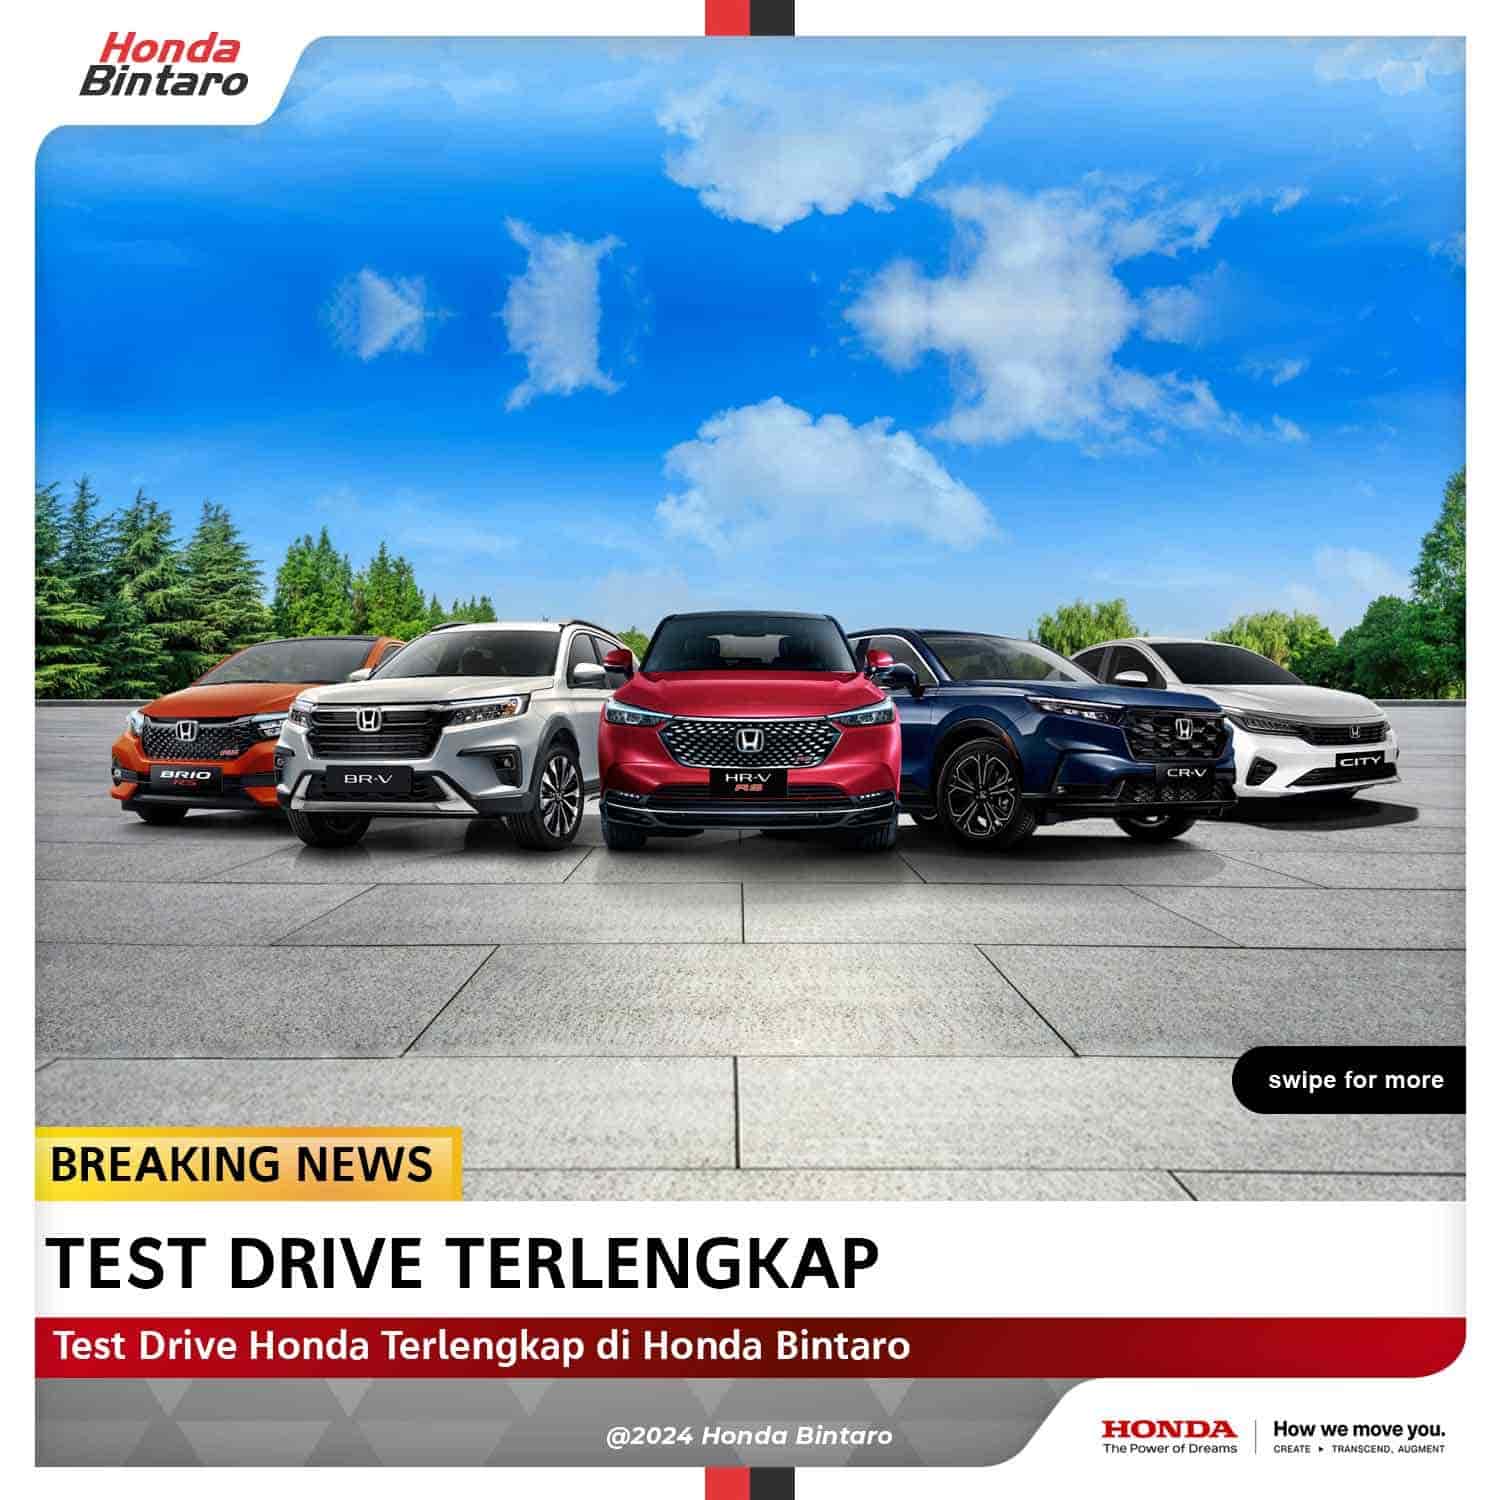 Test Drive Honda Terlengkap di Honda Bintaro